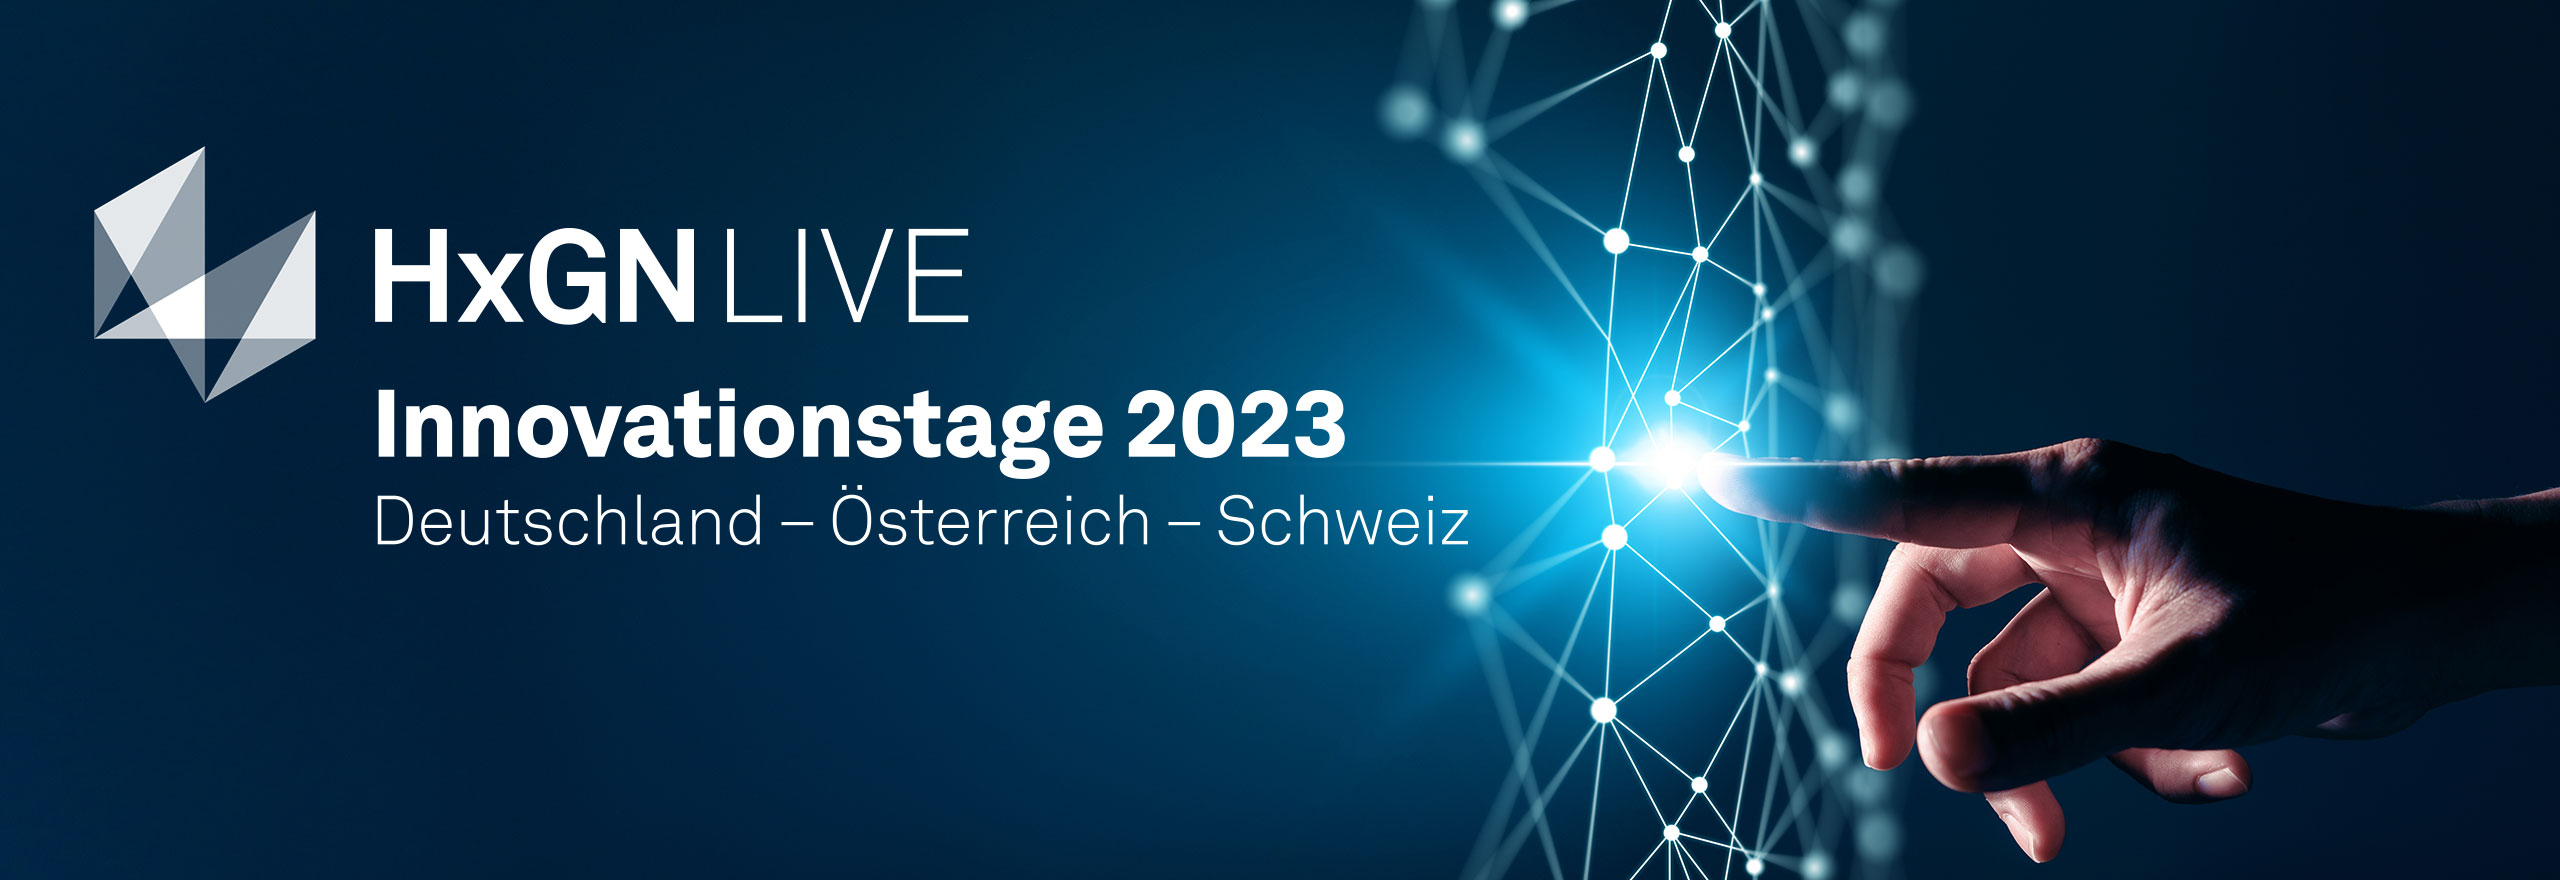 HxGN LIVE Innovationstage 2023 Deutschland Österreich Schweiz